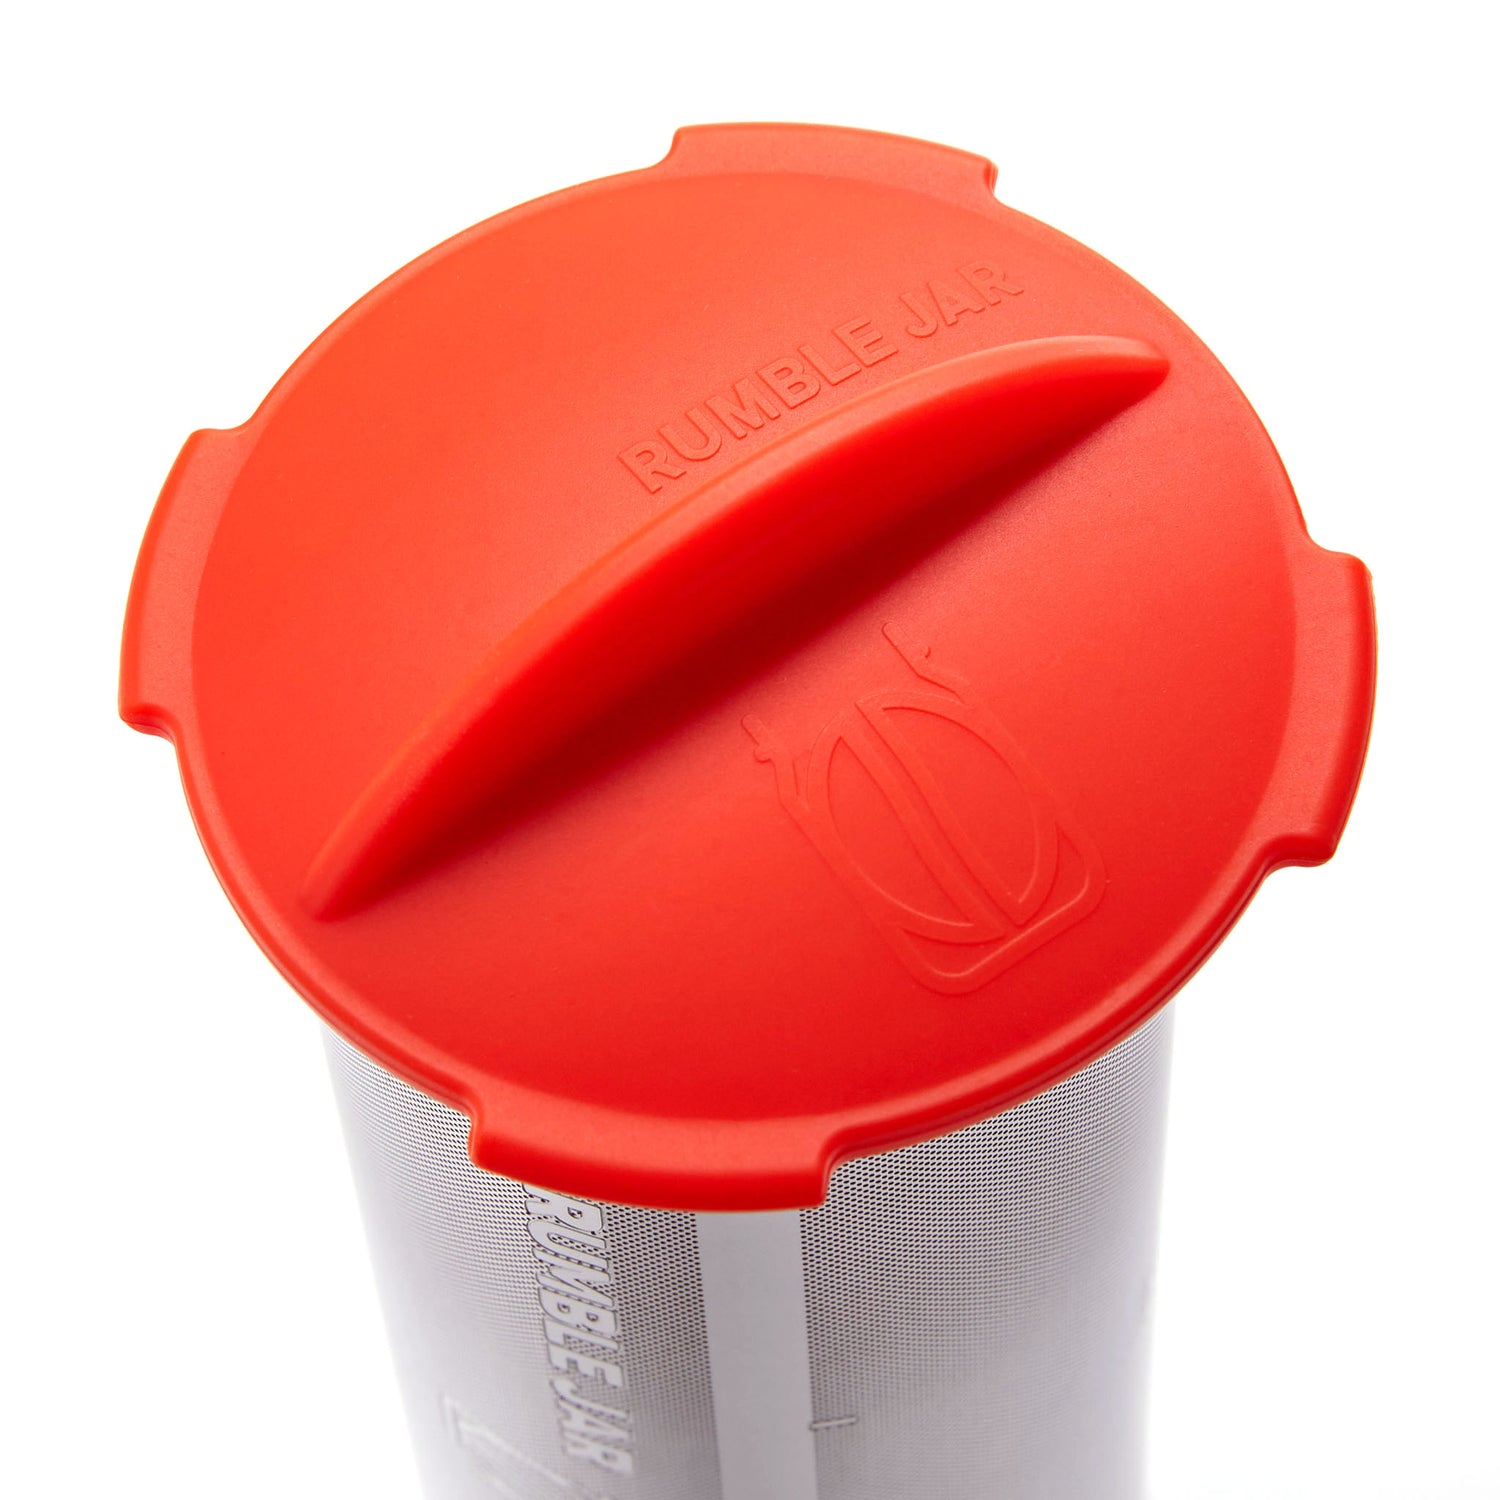 Rumble Jar's silicone cap in orangey-red